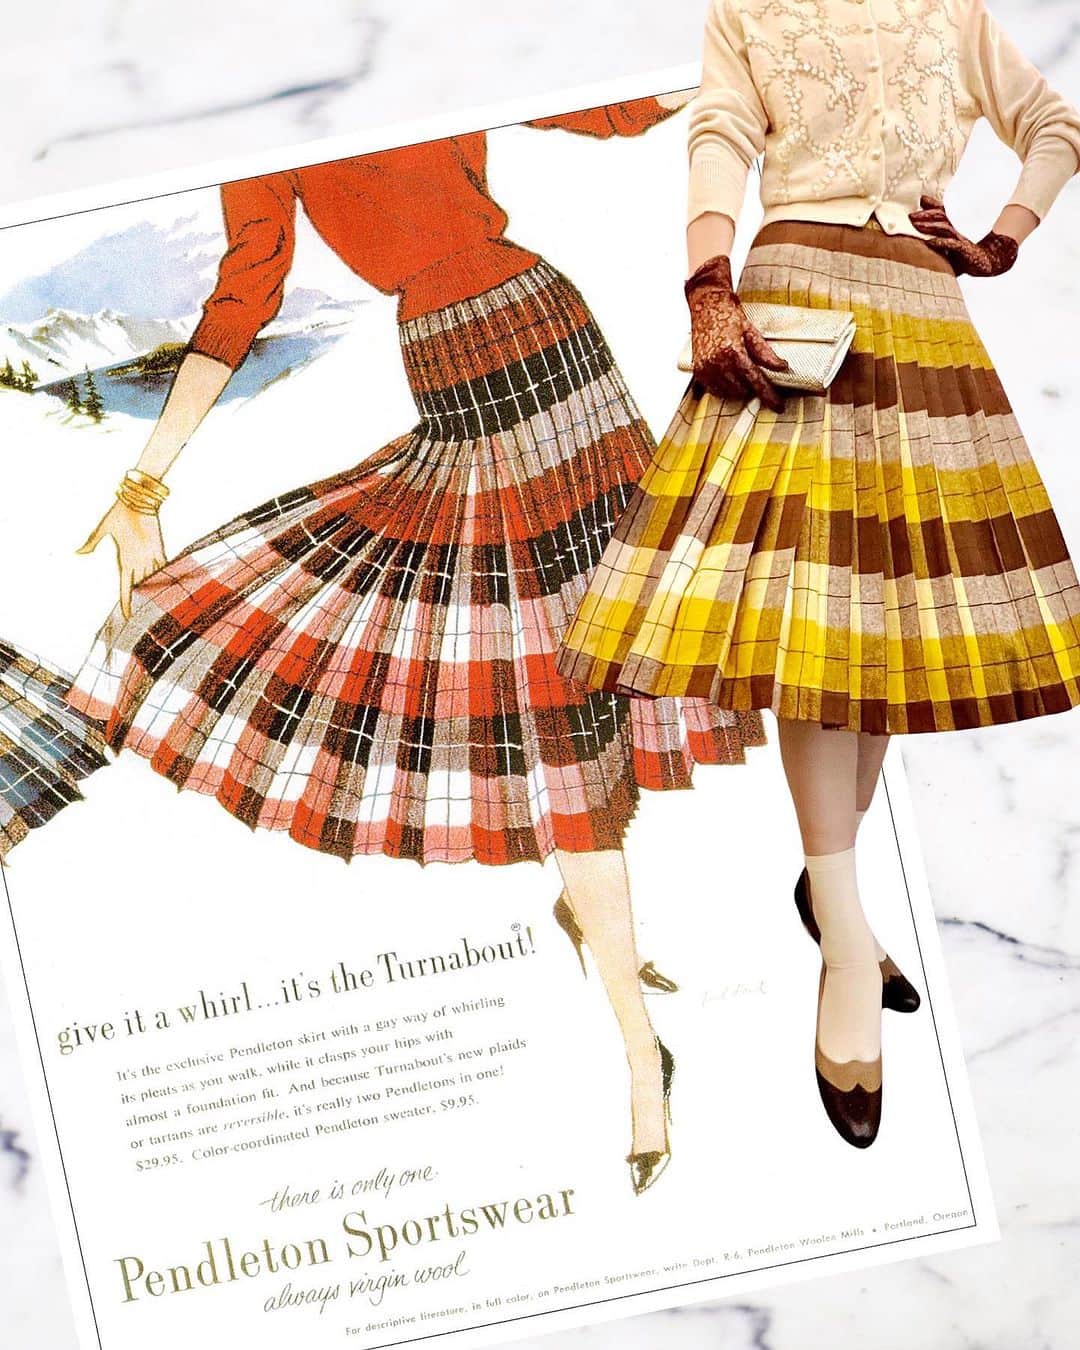 NUTTY Vintage&Collectibleのインスタグラム：「🌝Weekend special🌝堀江本店  ▫︎50s "PENDLETON" pleats skirt：new!  上質で重量感のあるウールが特徴のアメリカの老舗ブランドPENDLETNONのヴィンテージプリーツスカートをメインに2つのコーディネートをご紹介。  BROWN×MUSTARDのチェックがあたたかみのあるたっぷりプリーツのこちらのスカートはなんとリバーシブル。　　  同じ配色でありながらプリーツの重なりが反転する事で印象がガラリと変わる優れもの。  もちろんファスナーも裾始末もリバーシブル仕様です。  styling sally  ┈┈┈┈┈┈┈┈┈┈┈┈┈┈┈┈┈ 【NUTTY通販について】 ⚫︎SNS掲載商品は通販可能です。お気軽にDMにてお問い合わせ下さい。 ⚫︎＜ONLINE STORE＞http://nutty.theshop.jp/ （プロフィールページURLよりアクセス出来ます） ┈┈┈┈┈┈┈┈┈┈┈┈┈┈┈┈┈  #nuttyvintage#vintage #vintagefashion#南堀江#古着#1940s#1950s#1960s#1970s #1980s #80s #ヴィンテージ#1940sfashion#1940sstyle #1960sfashion#1960sblouse #vintagePaisley #vintagebamboobag#costumejewelry#collectivejewelry#earlyplastic#vintagehat#ootd #vintageootd #vintagecardigan #vintagesweater #pendleton」